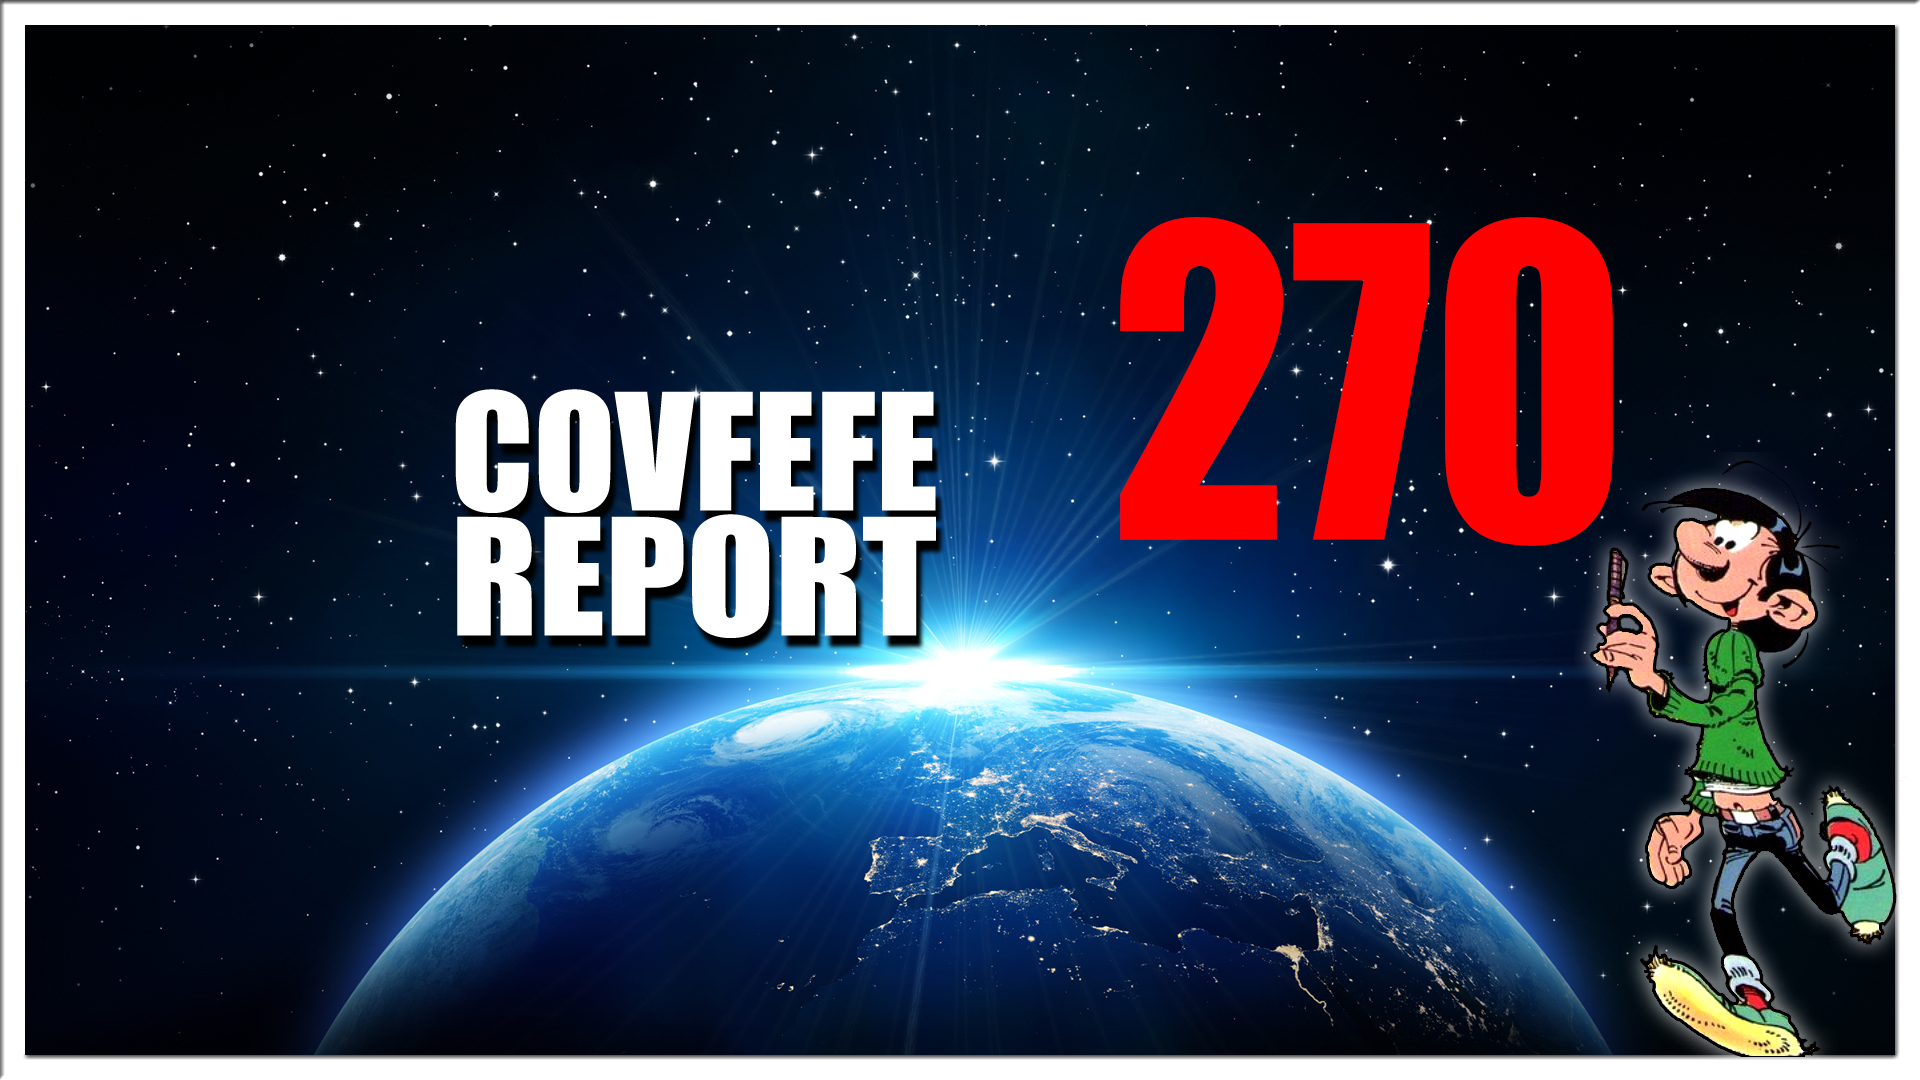 Covfefe Report 270. De strop knelt, Libanon Ramp of aanslag, Aboutaleb shoarma, Cojona geest bij Ajax